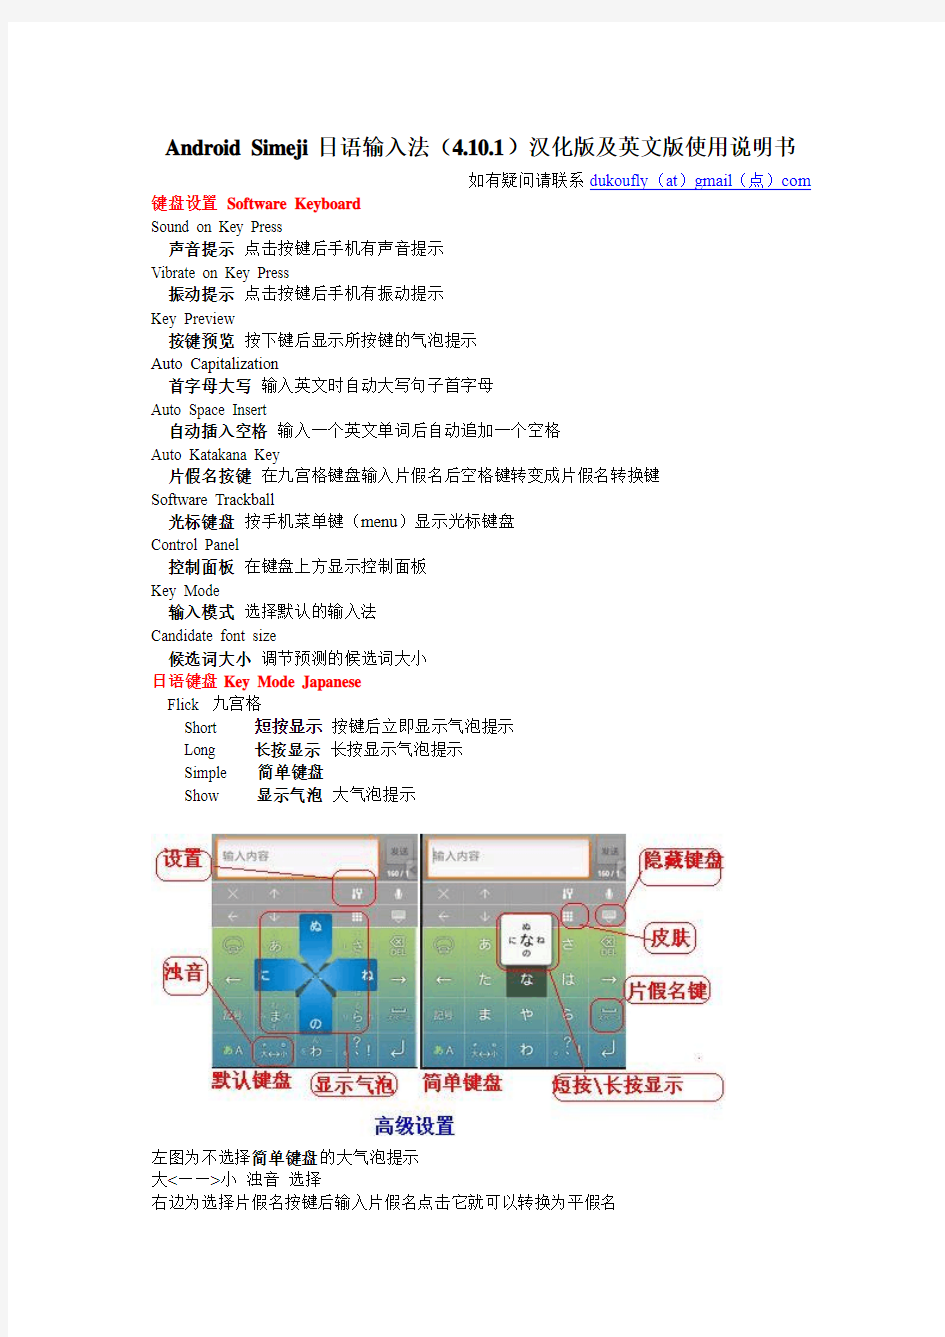 安卓日语输入法simeji汉化版及使用手册含英文